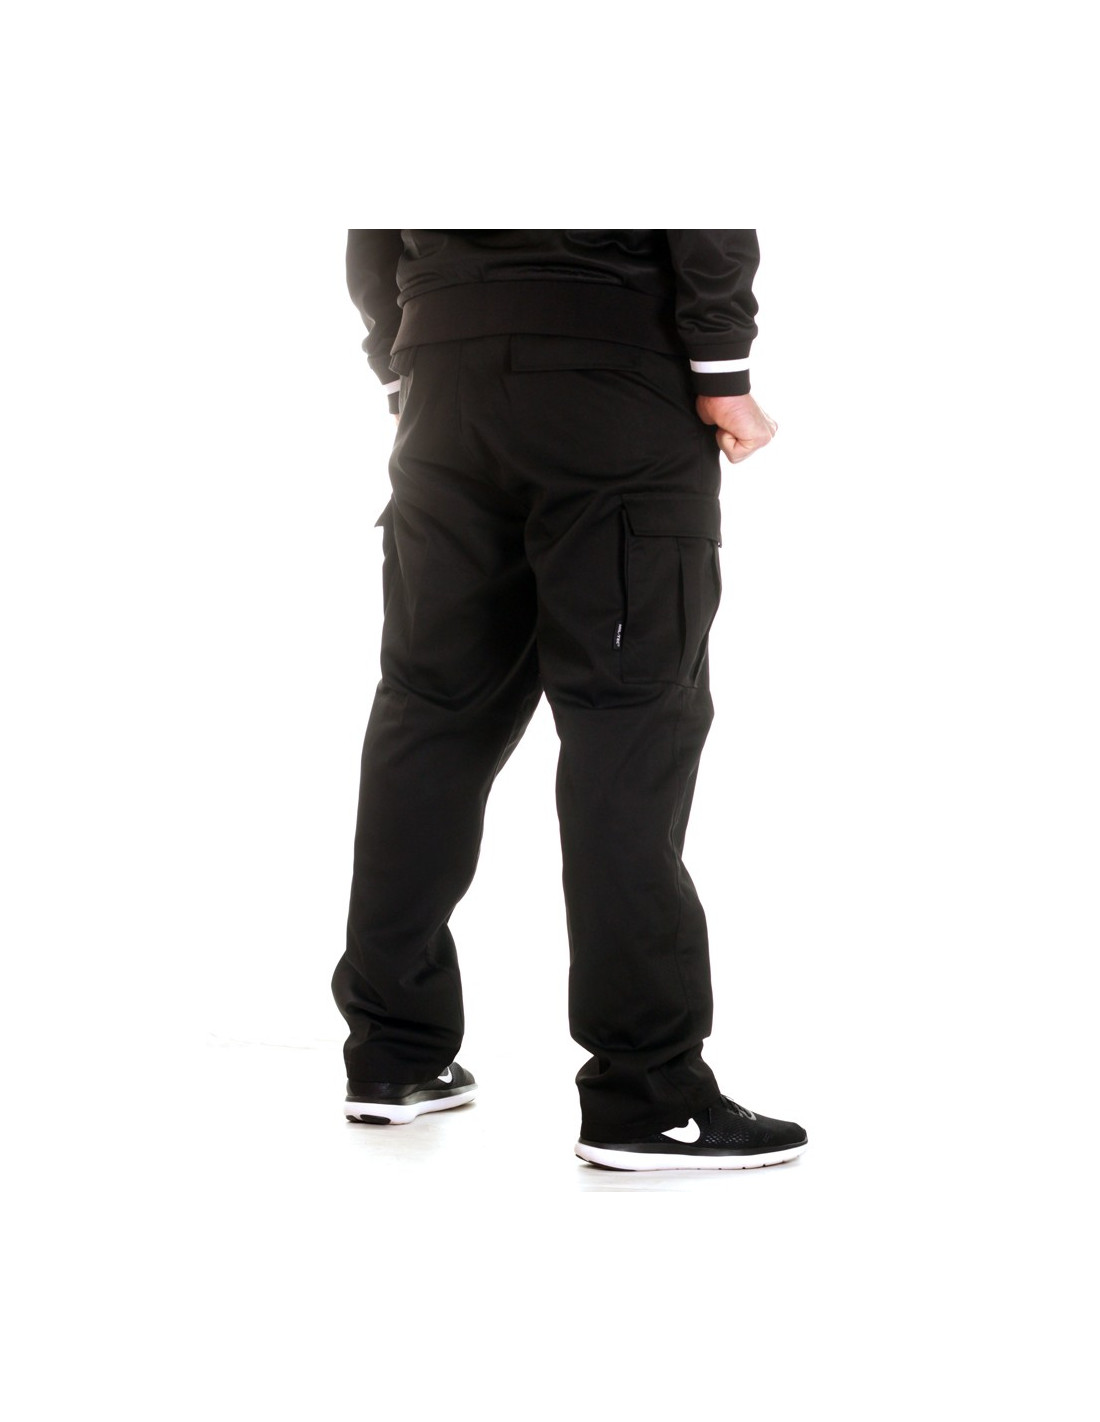 TechWear Cargo Pants Black - T11810002